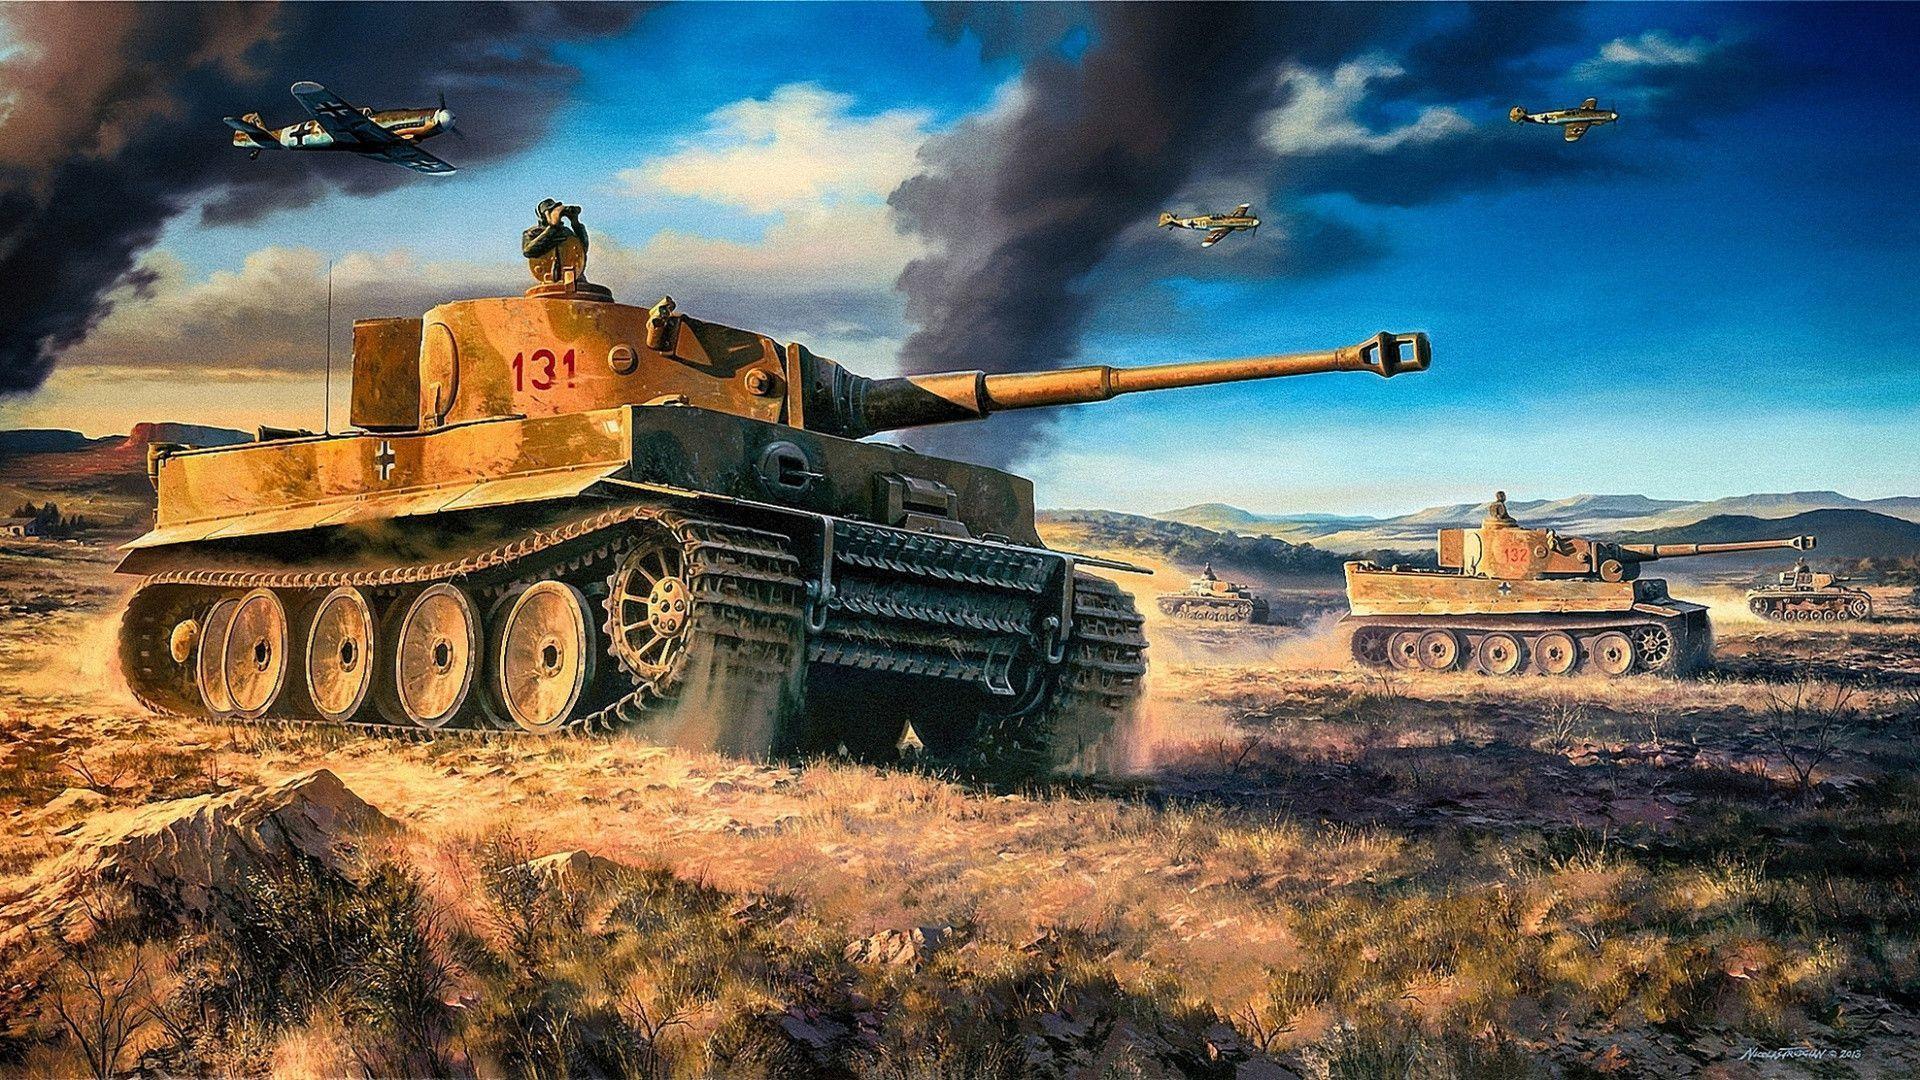 9RBGltP-tiger-tank-wallpaper.jpg